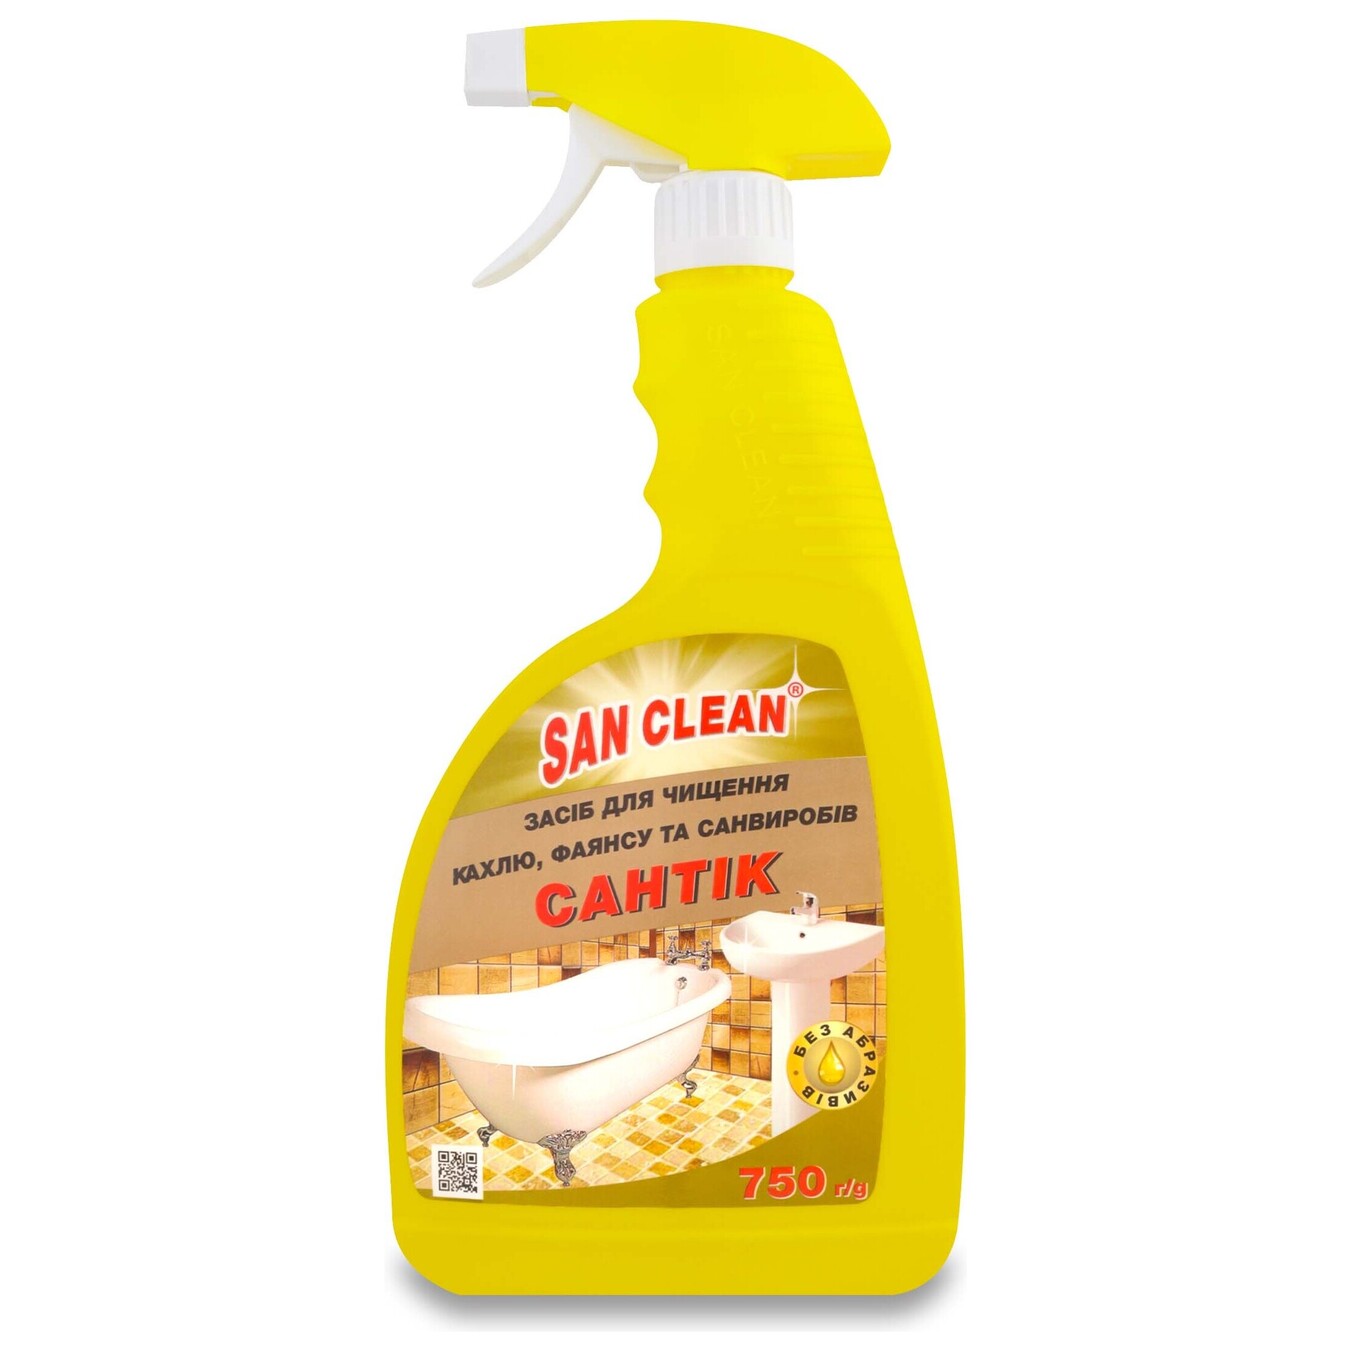 San Clean Detergent Santik With Spray 750g